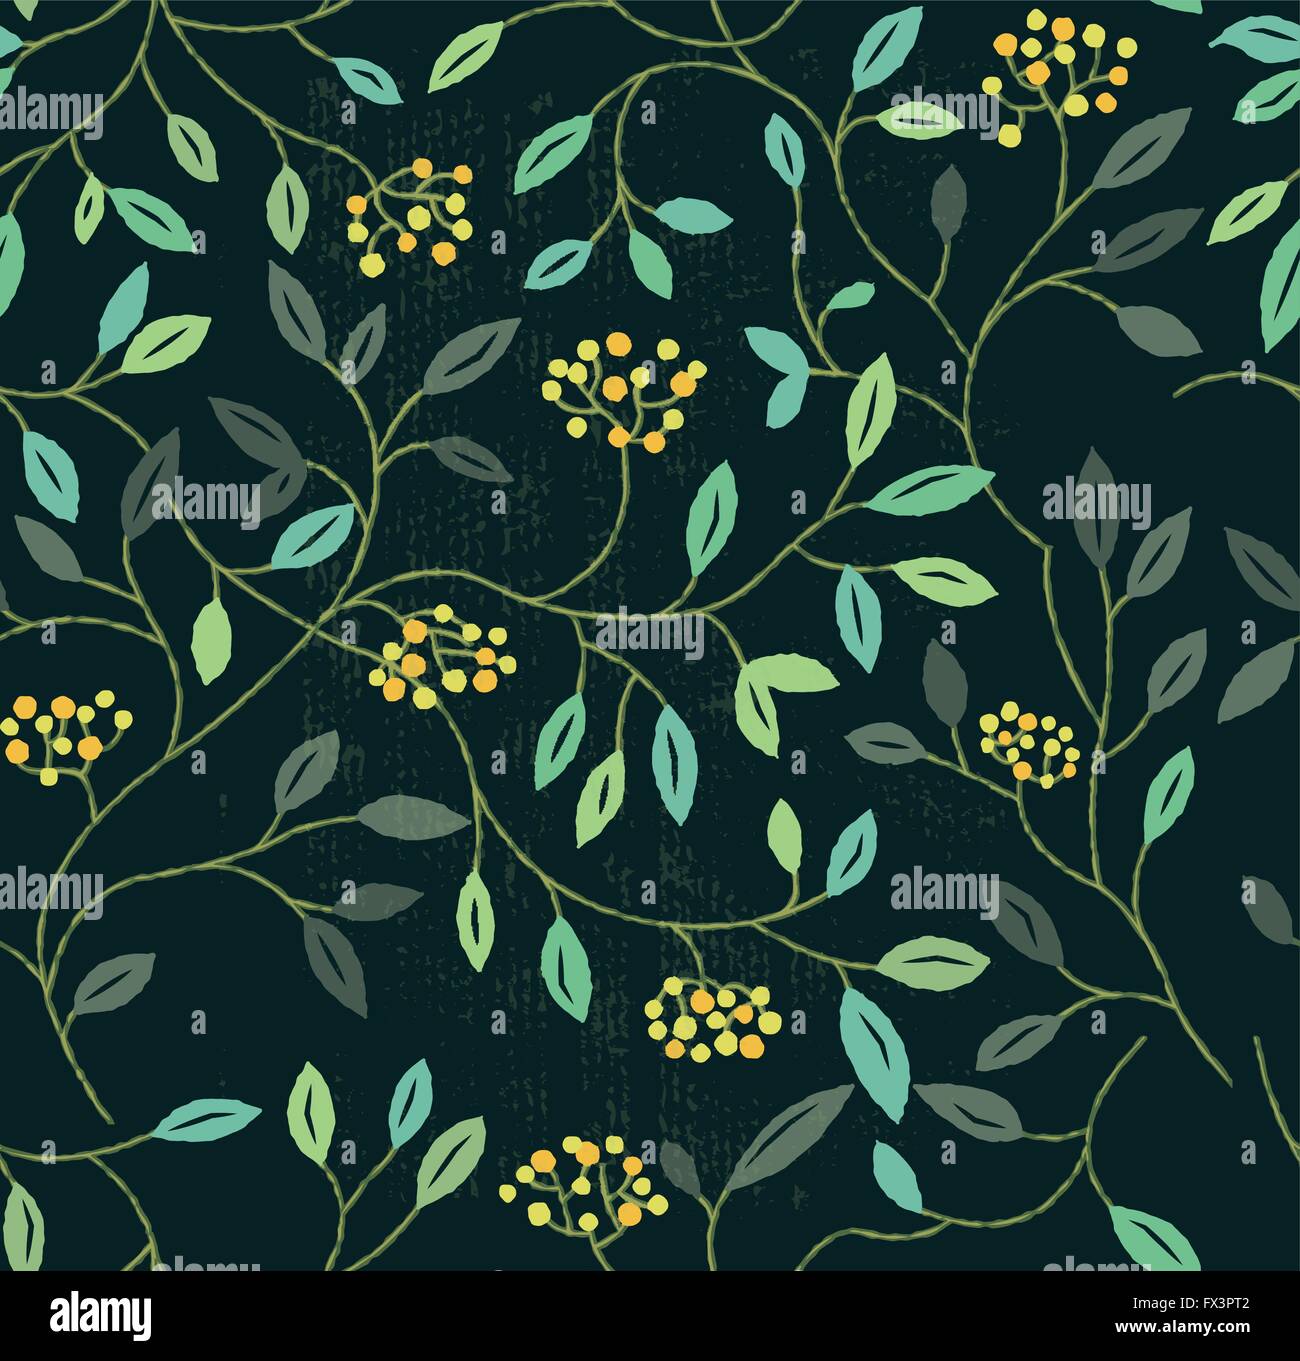 Blumen Sommer Seamless Pattern. Florale Elemente Hintergrund wiederholen. Vektor-illustration Stock Vektor